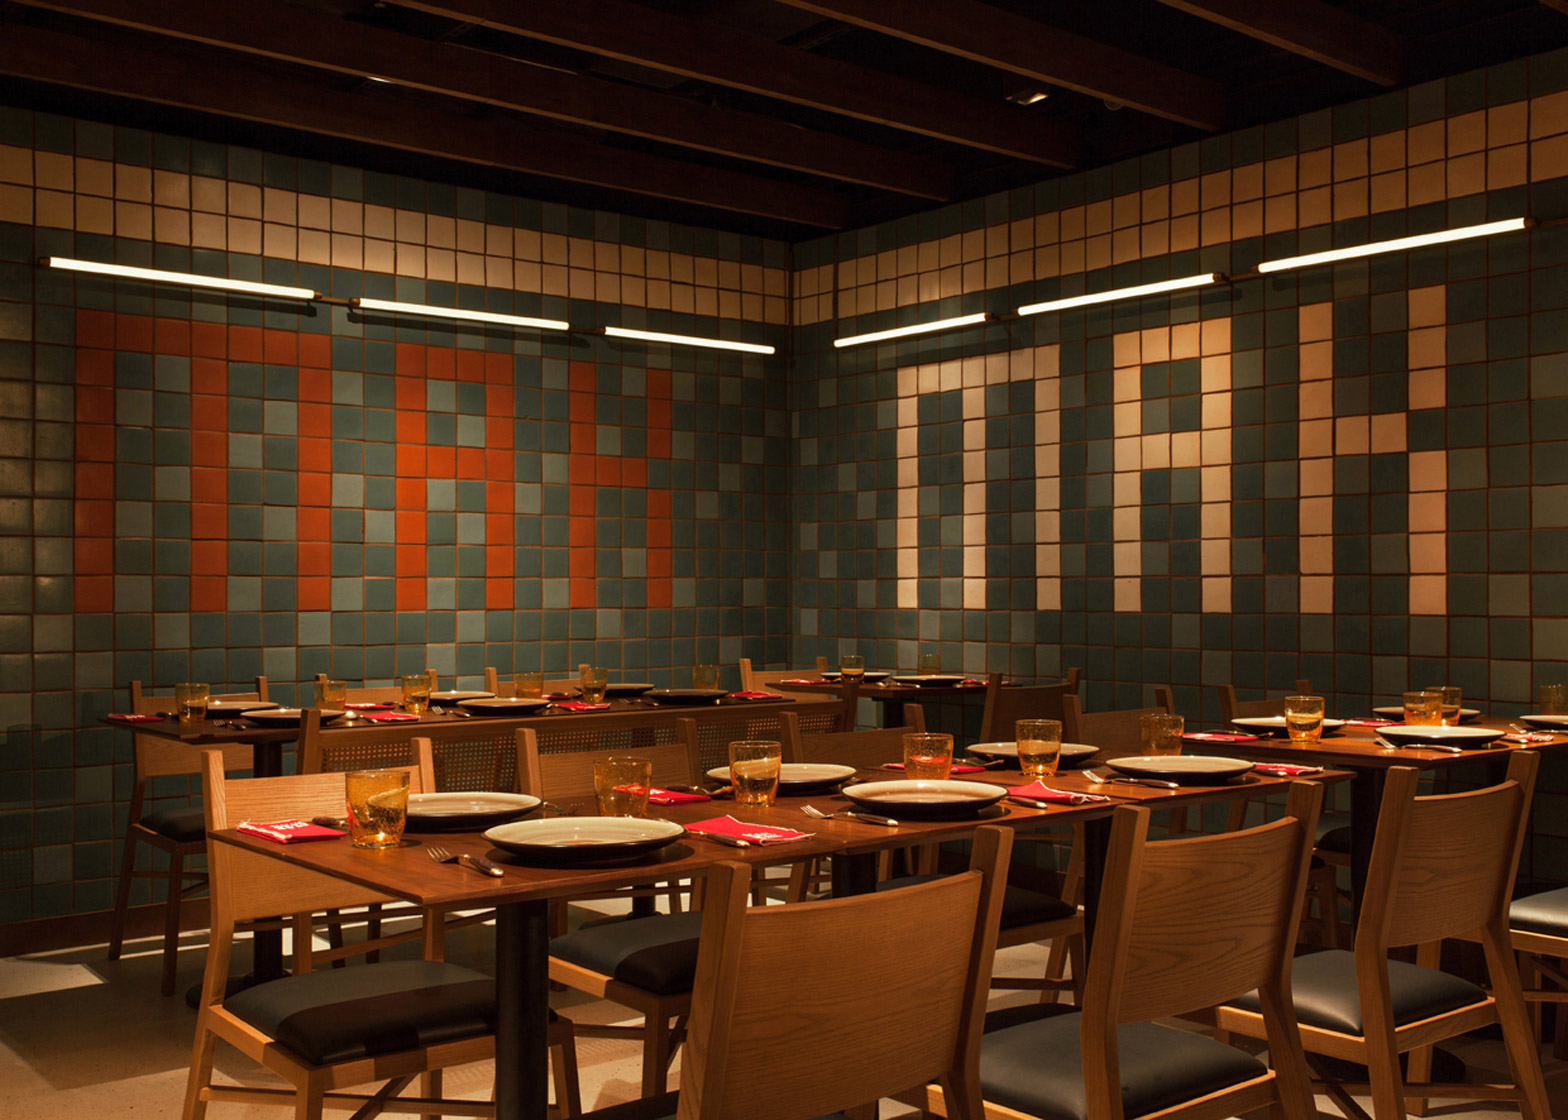 mak-mak-thai-restaurant-nc-design-architecture_dezeen_1568_8